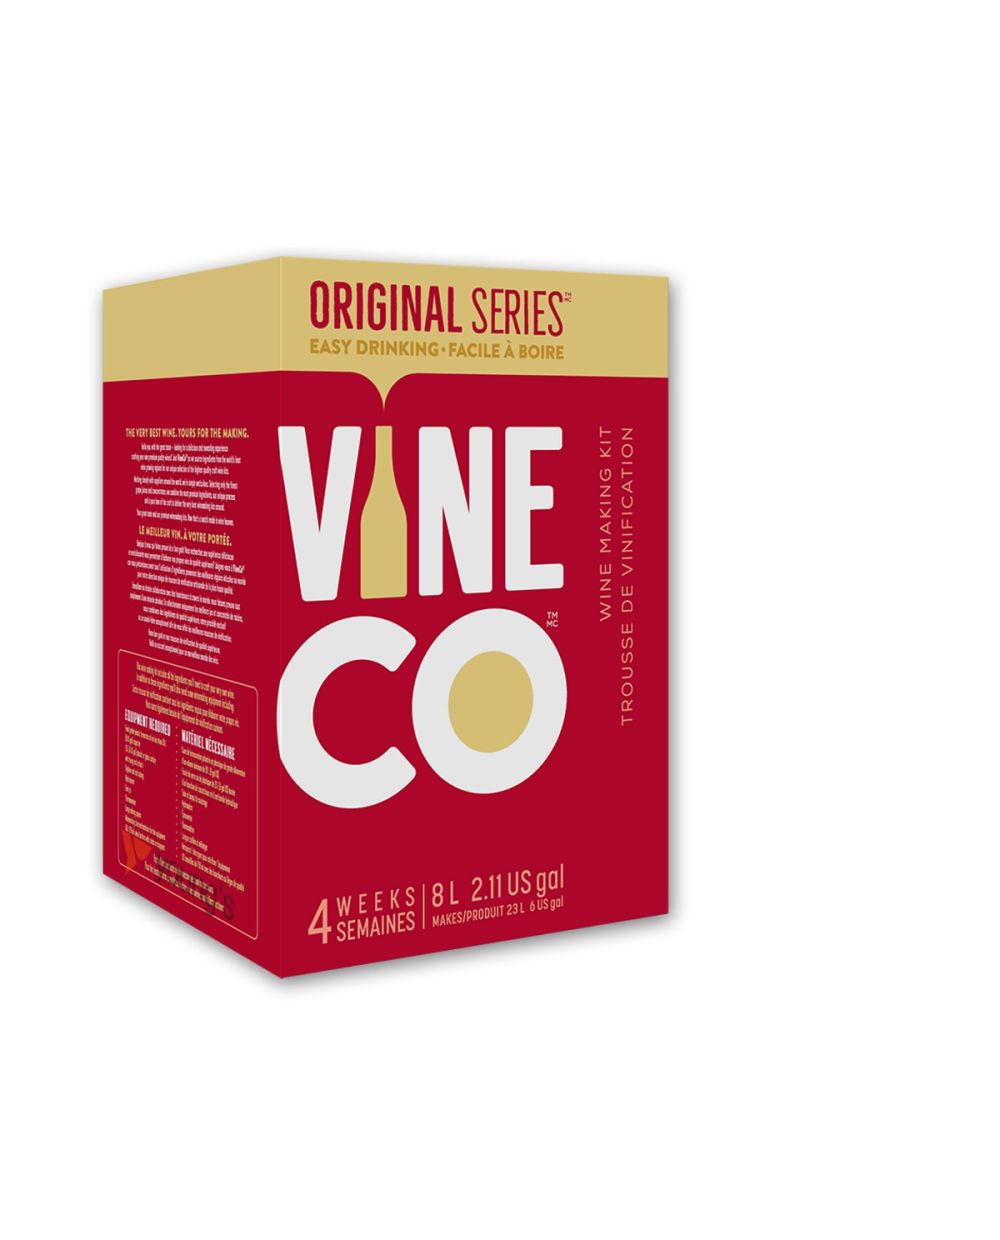 Original Series Valroza, Italy Wine Kit